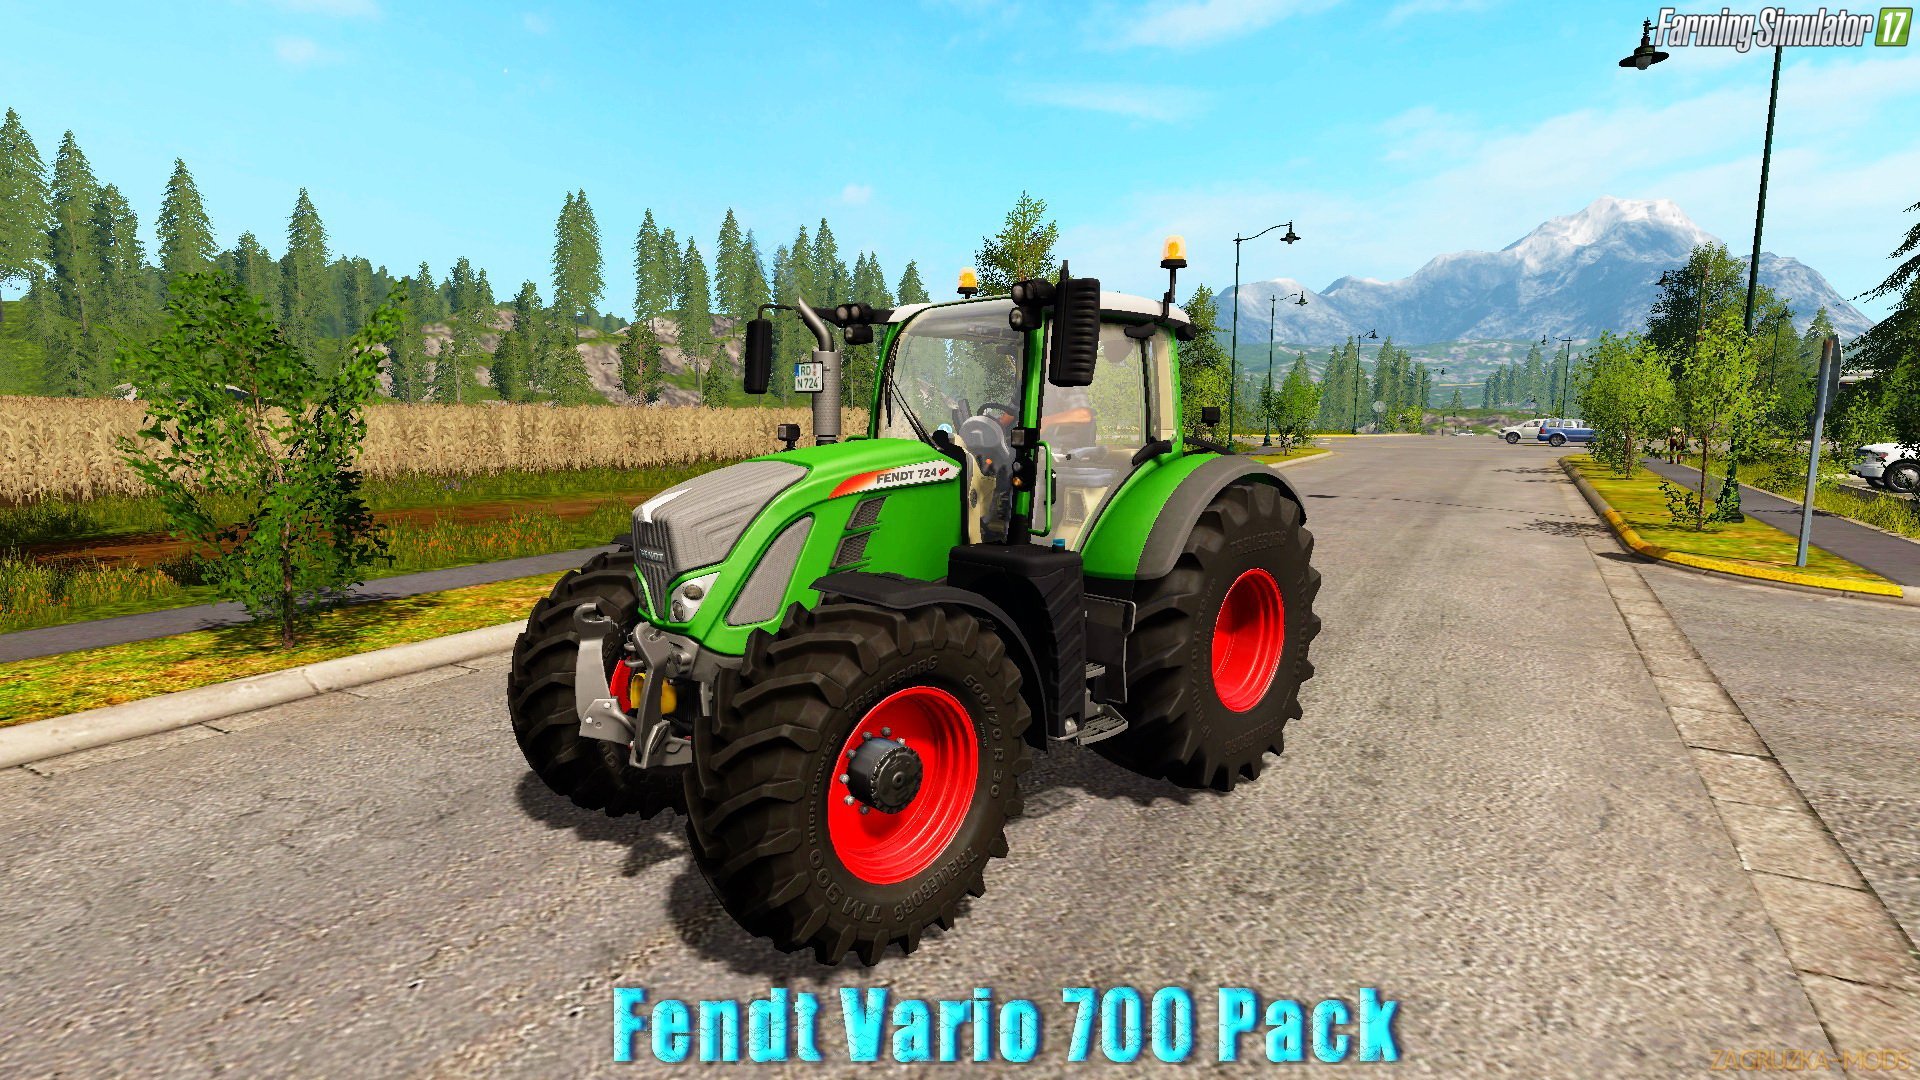 Tractor Fendt Vario 700 Pack v1.0 for FS 17